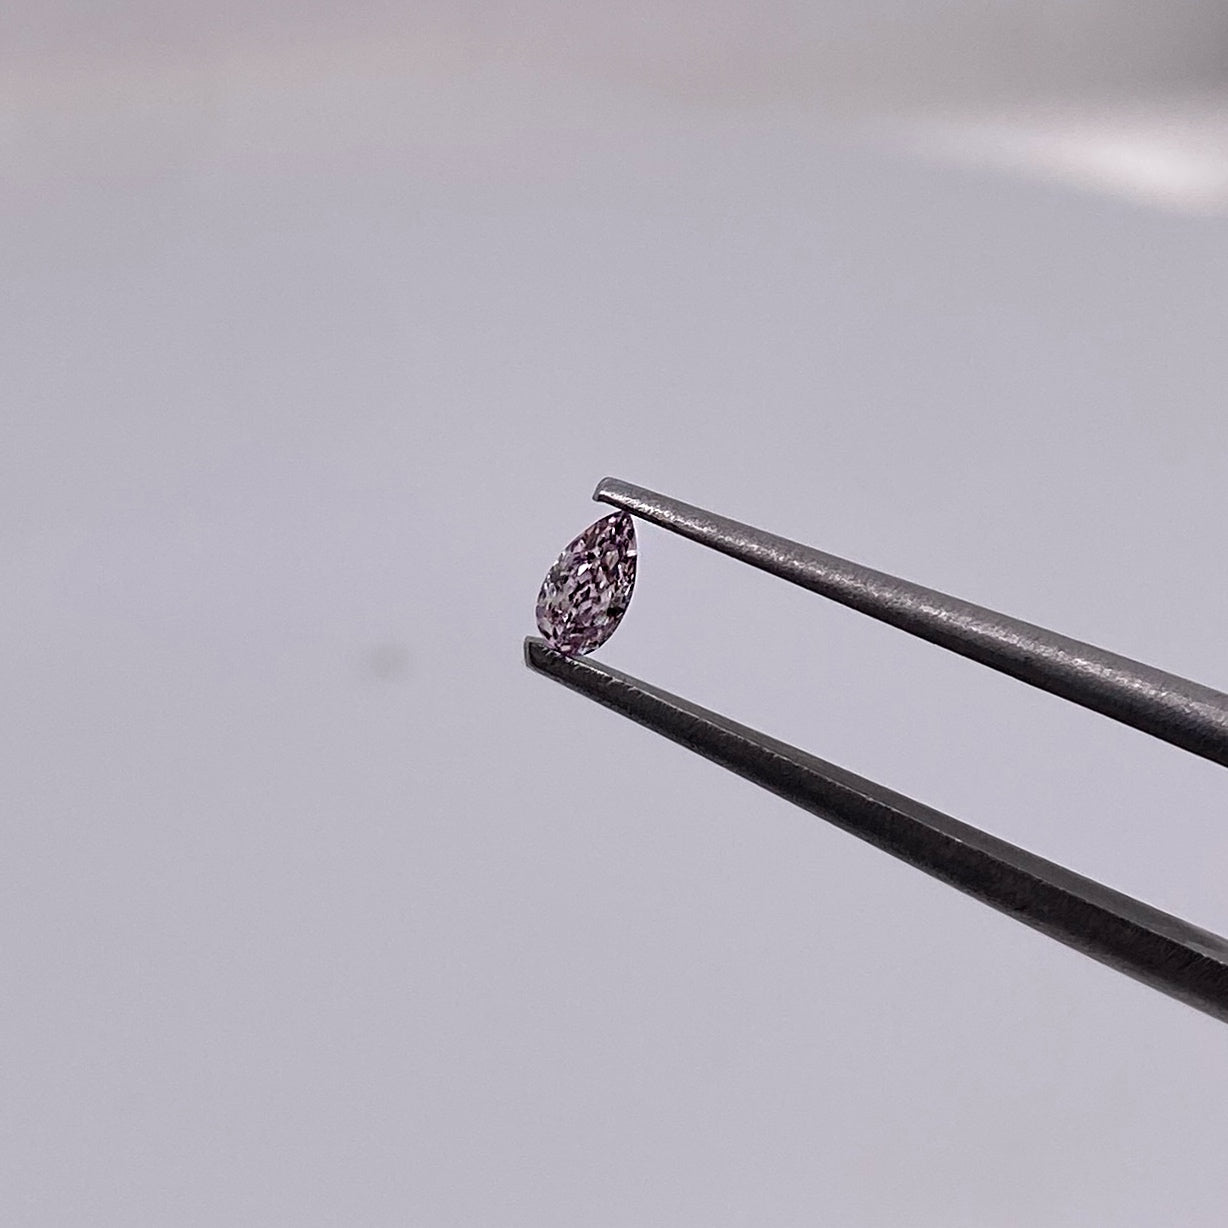 ADVANCE / SECTION Purple Pink Diamond “D” / Drop Cut / Measurements: 2.16 x 3.9mm, total value 17,800 pesos